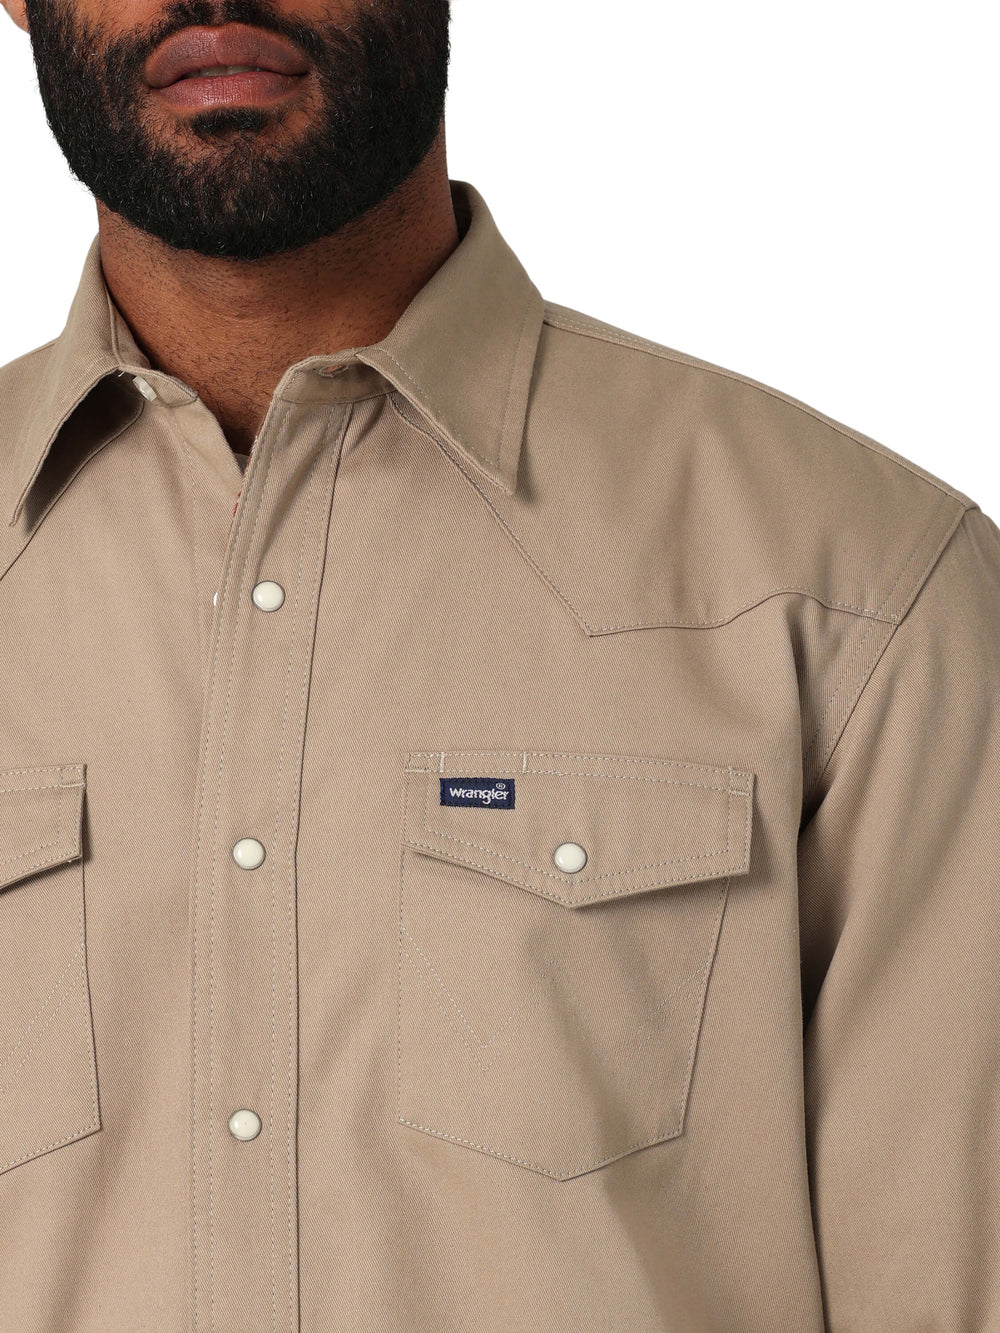 front pocket Wrangler | Flannel Lined Work Khaki Shirt 